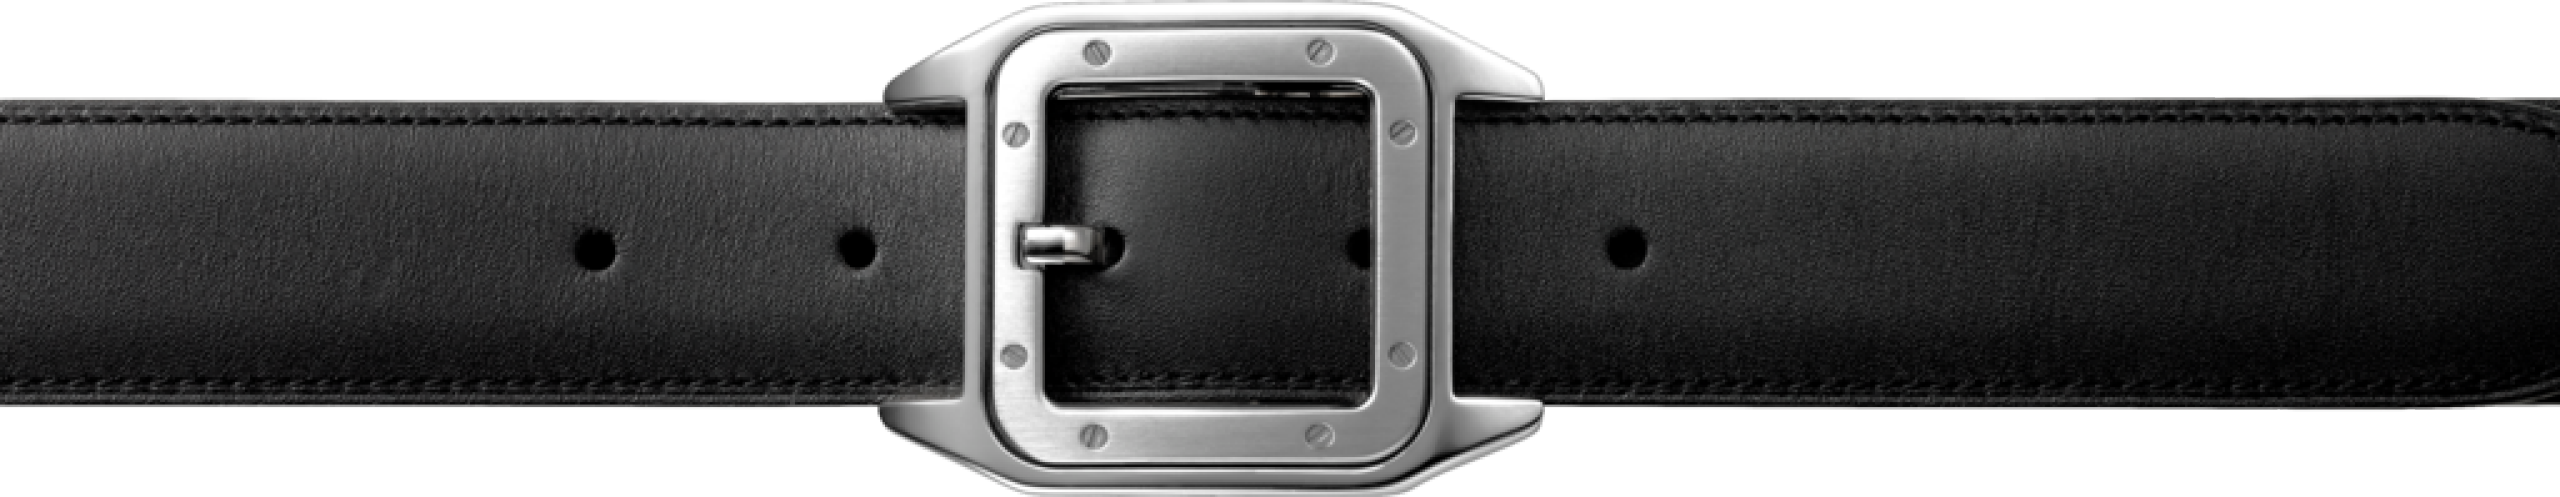 Belt Png Image - Belt, Transparent background PNG HD thumbnail